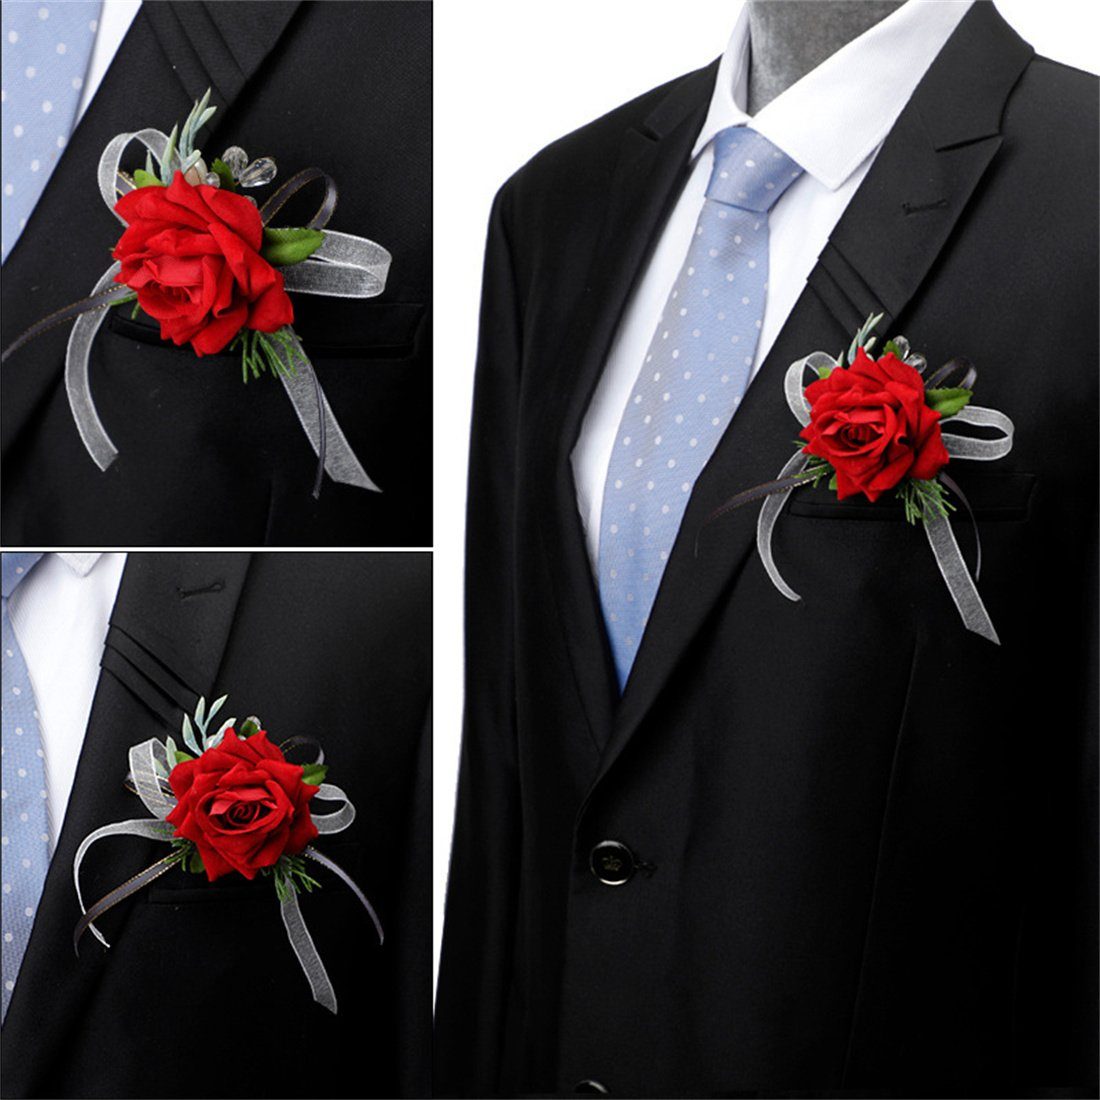 Trauzeugenkorsage, Braut-Bräutigam-Hochzeit Brosche, simulierte Kunstblume Rot DÖRÖY Rose